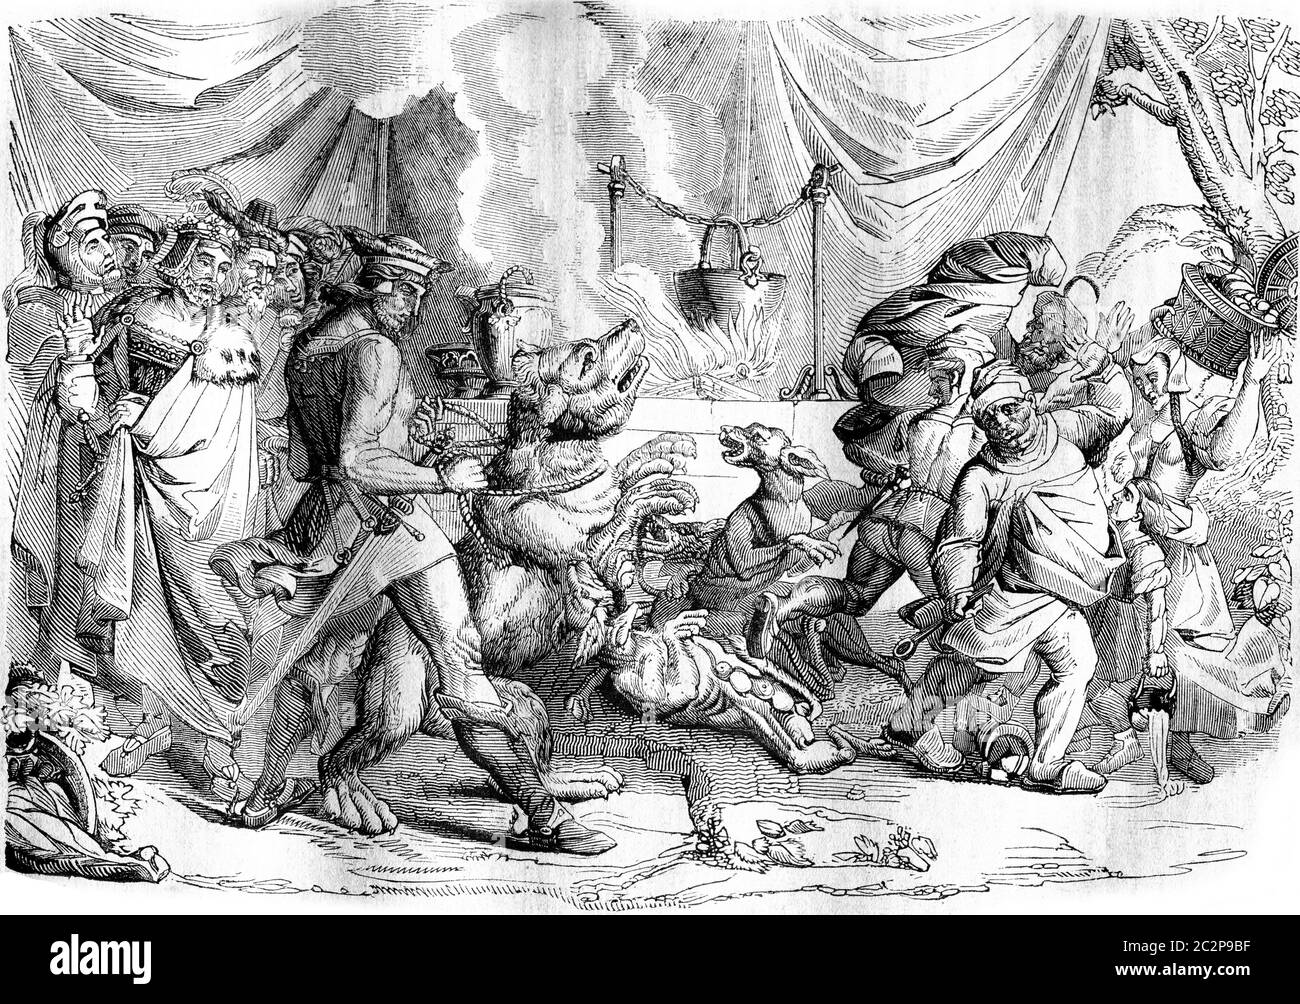 Eine Etappe des Gedichts der Nibelungen von Cornelius, siehe die Anleitung auf Cornelius, Vintage-gravierte Illustration. Magasin Pittoresque 1836. Stockfoto